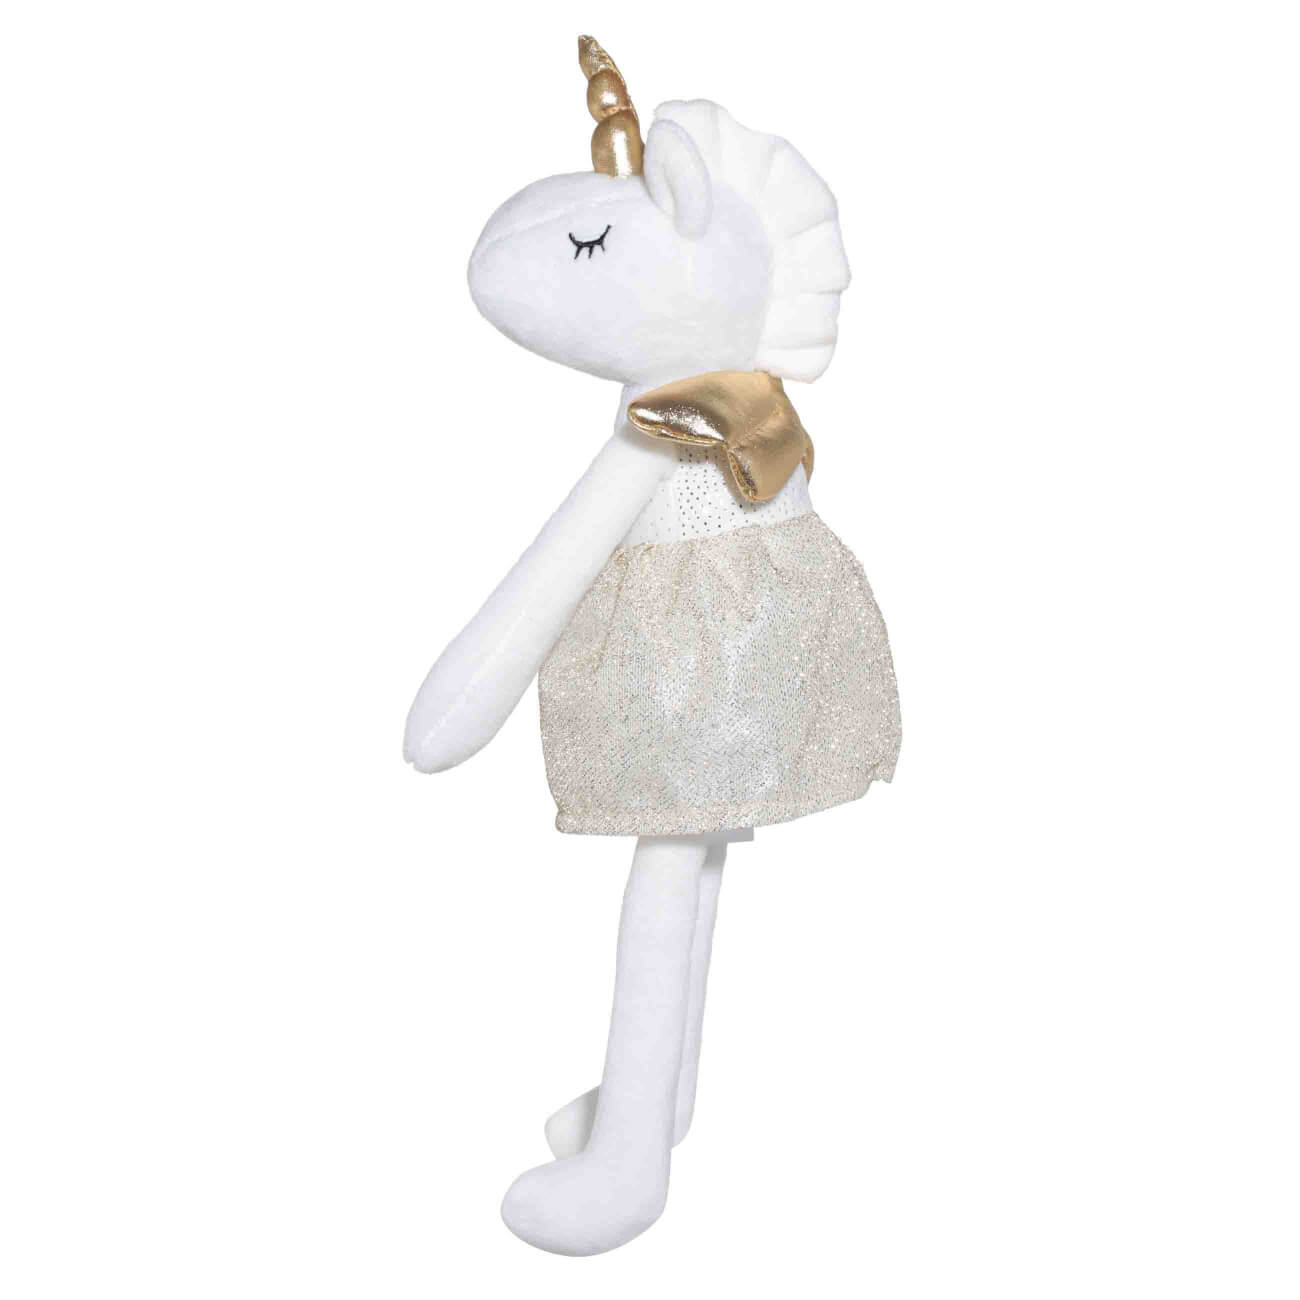 Игрушка, 37 см, мягкая, полиэстер, белая, Единорог в золотистой юбке, Unicorn игрушка 63 см мягкая полиэстер молочная гусь goose